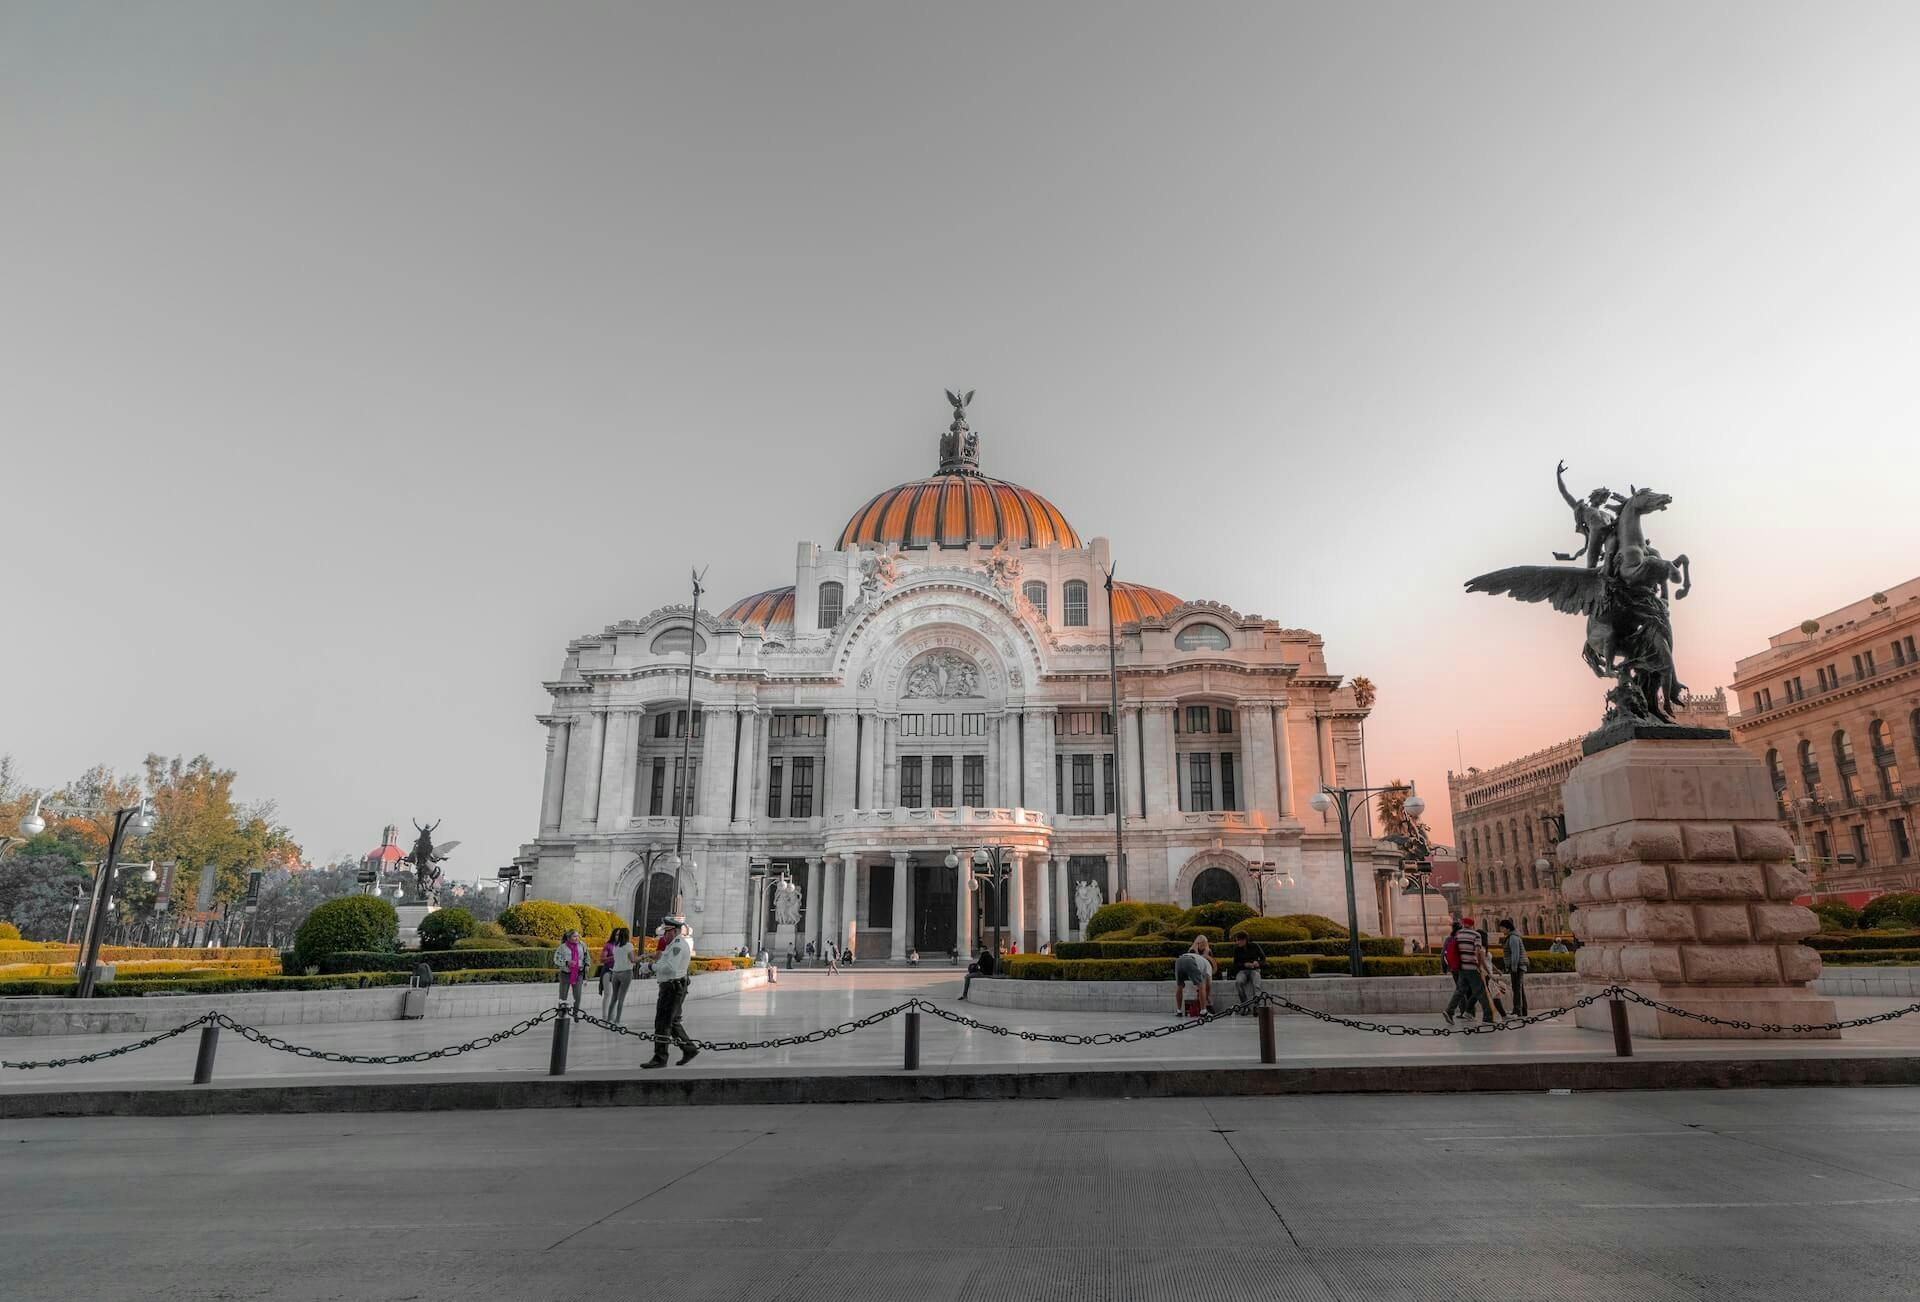 Palacio de Bellas Artes Mexico City